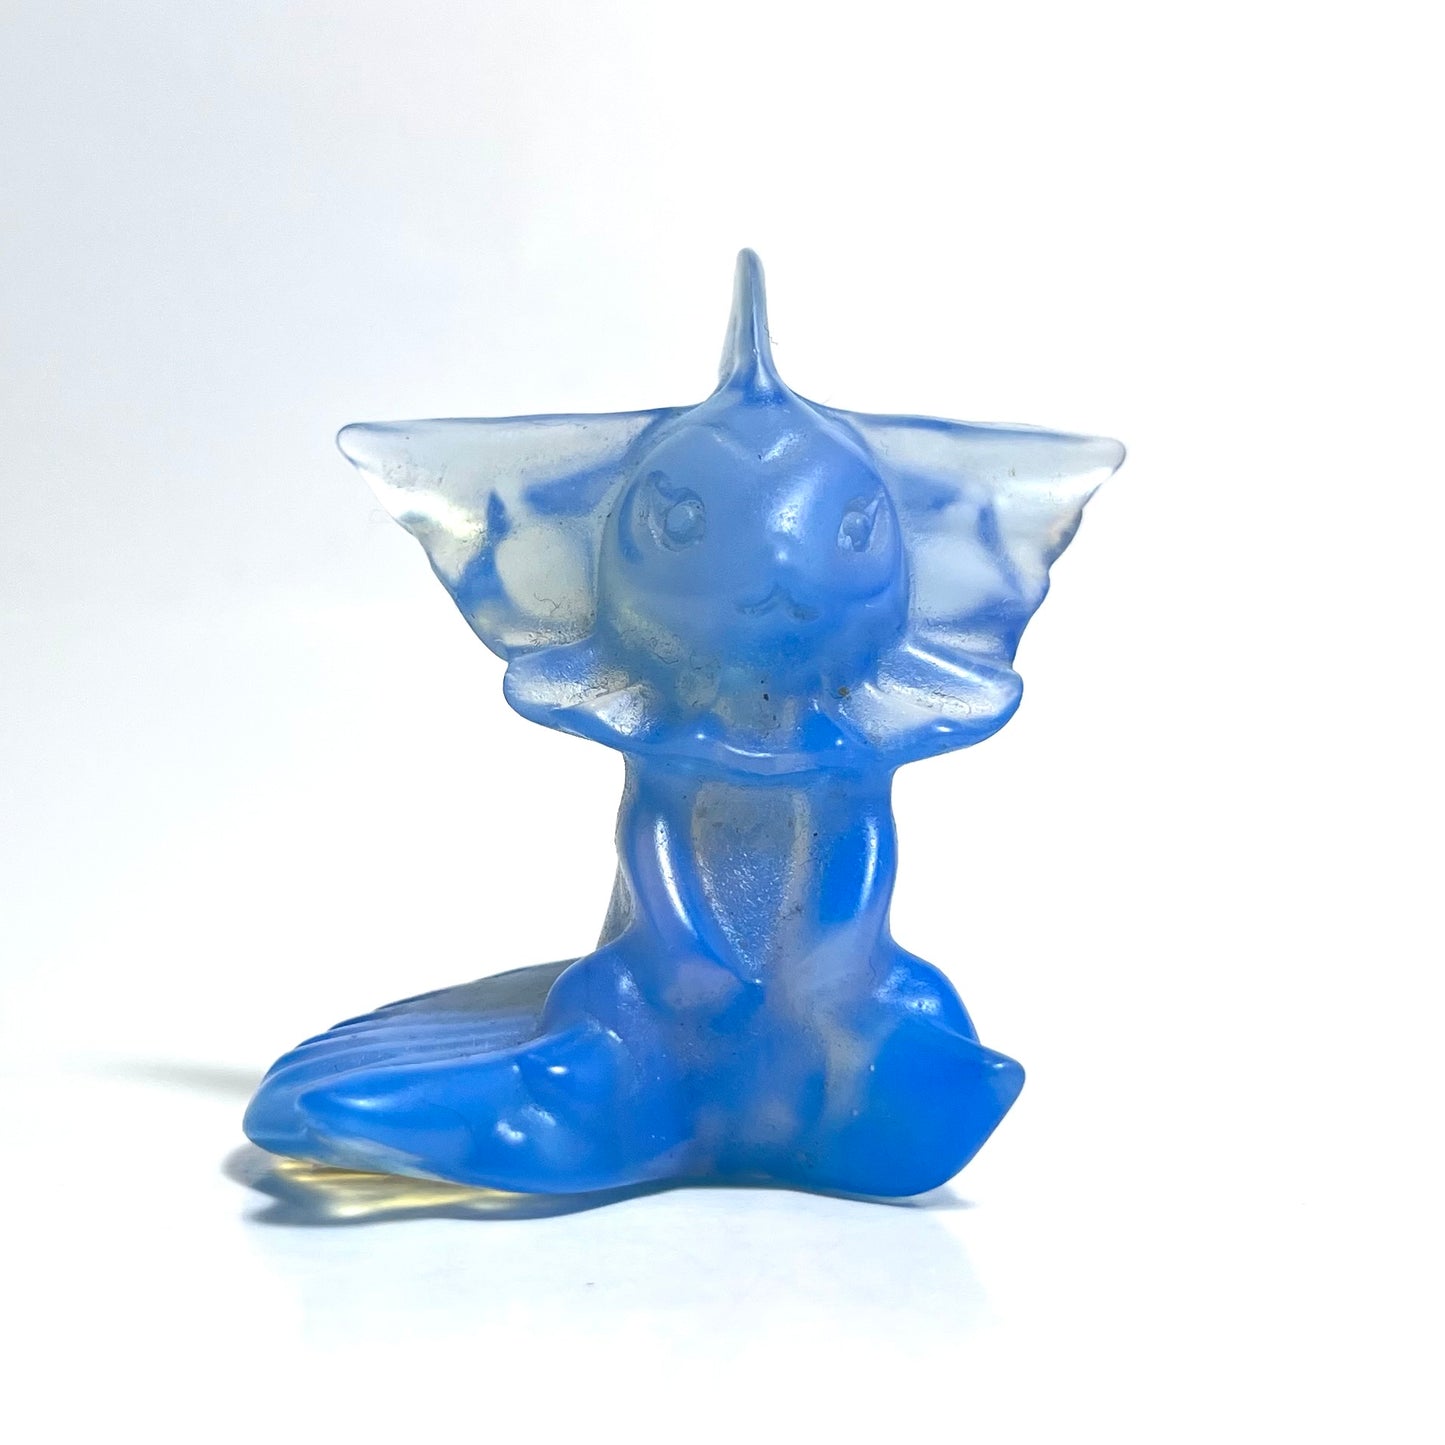 Vaporeon | Blue Opalite Pokemon Inspired